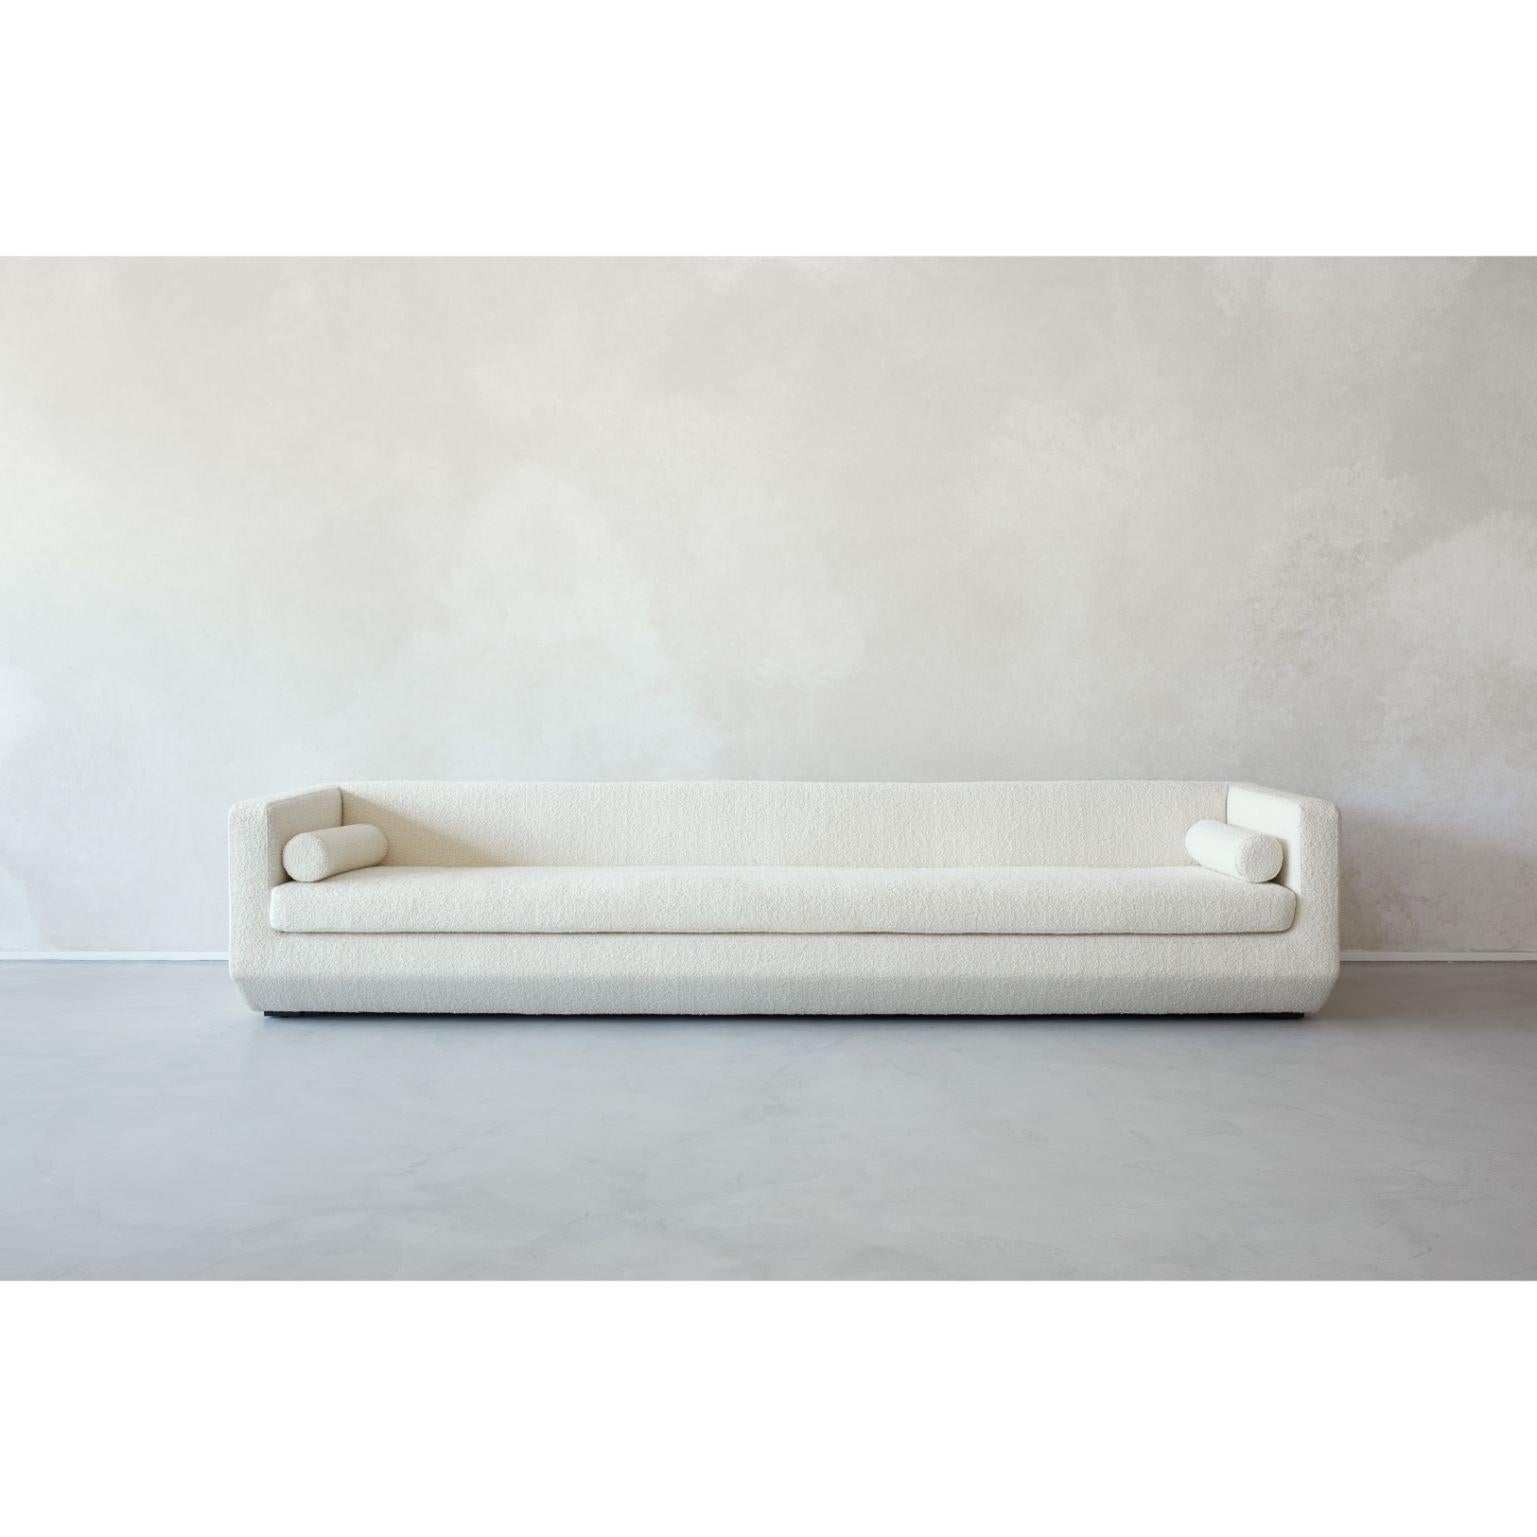 Petit biseau - Couch by Marc Dibeh
2021
MATERIAL : Tissu
Dimensions : L 180 x H 63 x P 80 cm 

Également disponible : Grand

Le designer Marc Dibeh, basé à Beyrouth, raconte son environnement culturel à travers des intérieurs et des produits